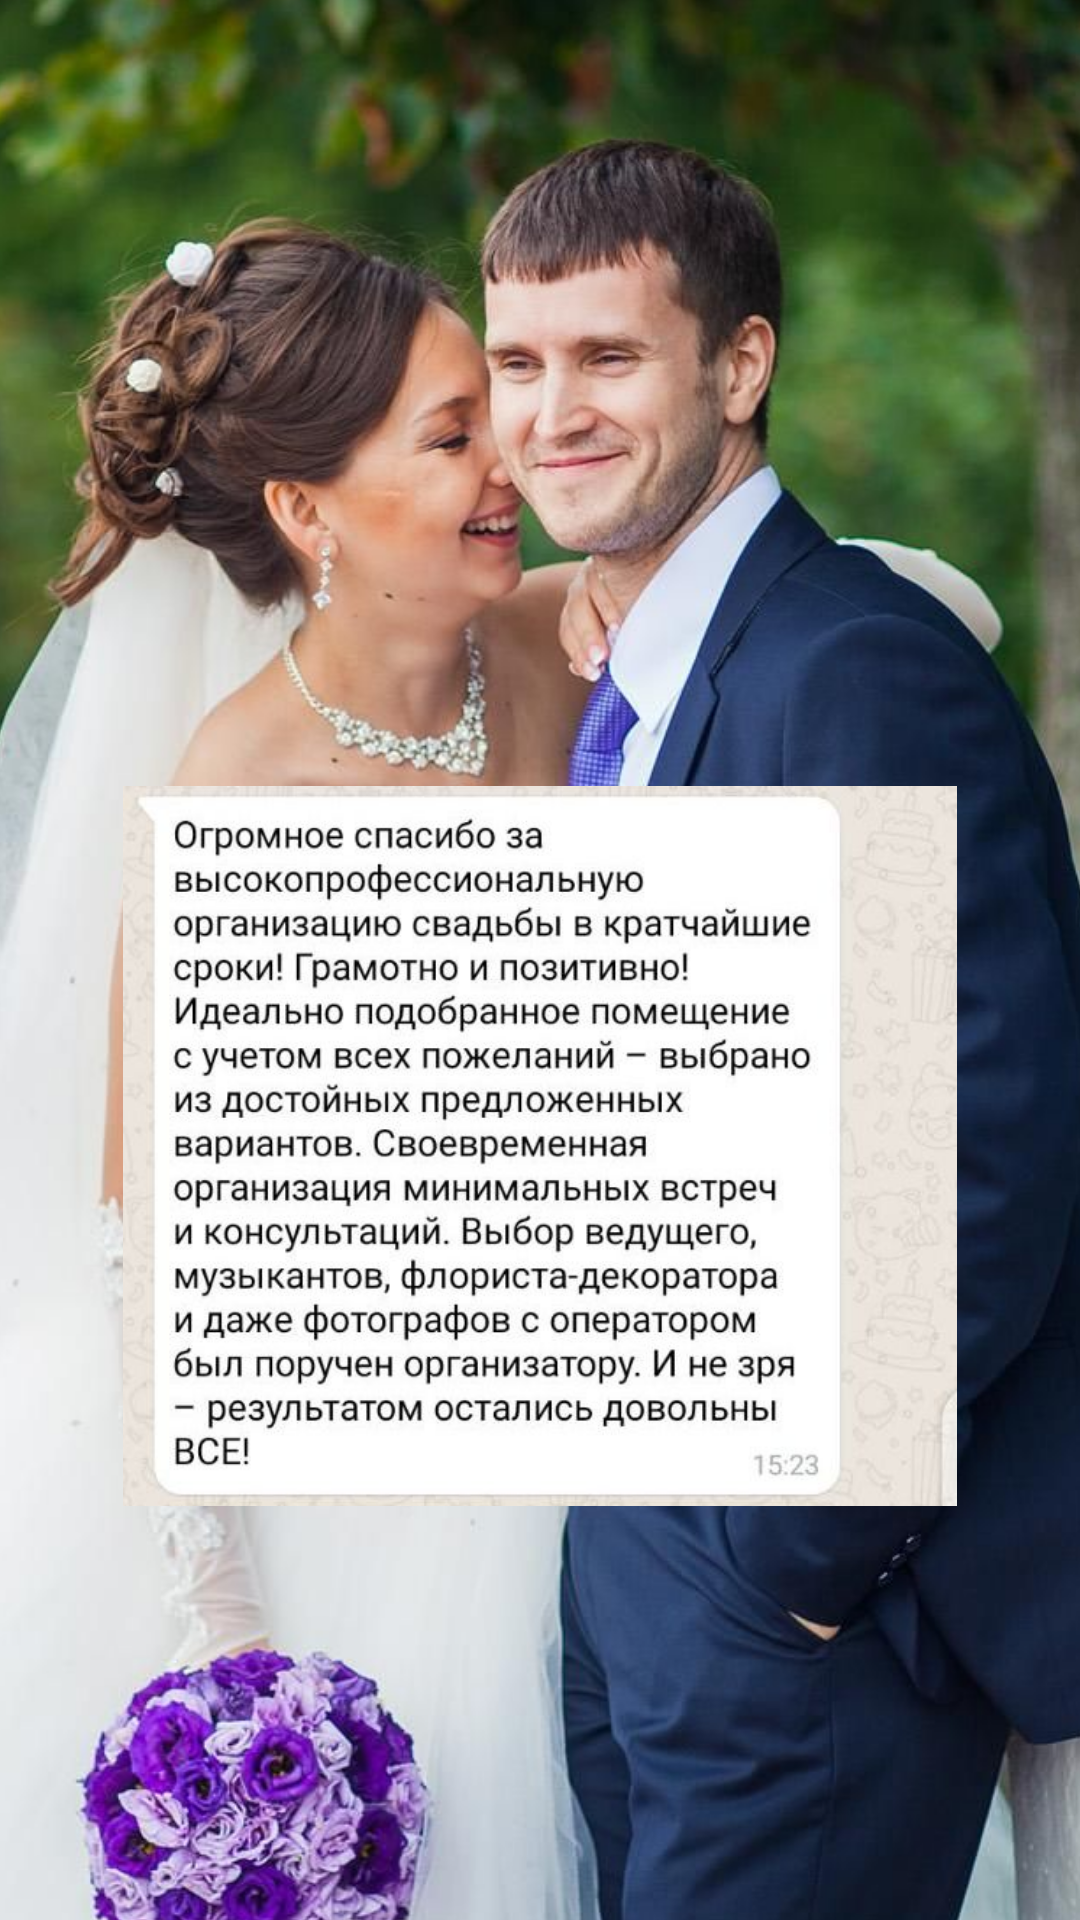 Организация свадьбы в Новороссийске
от компании Pandaevent